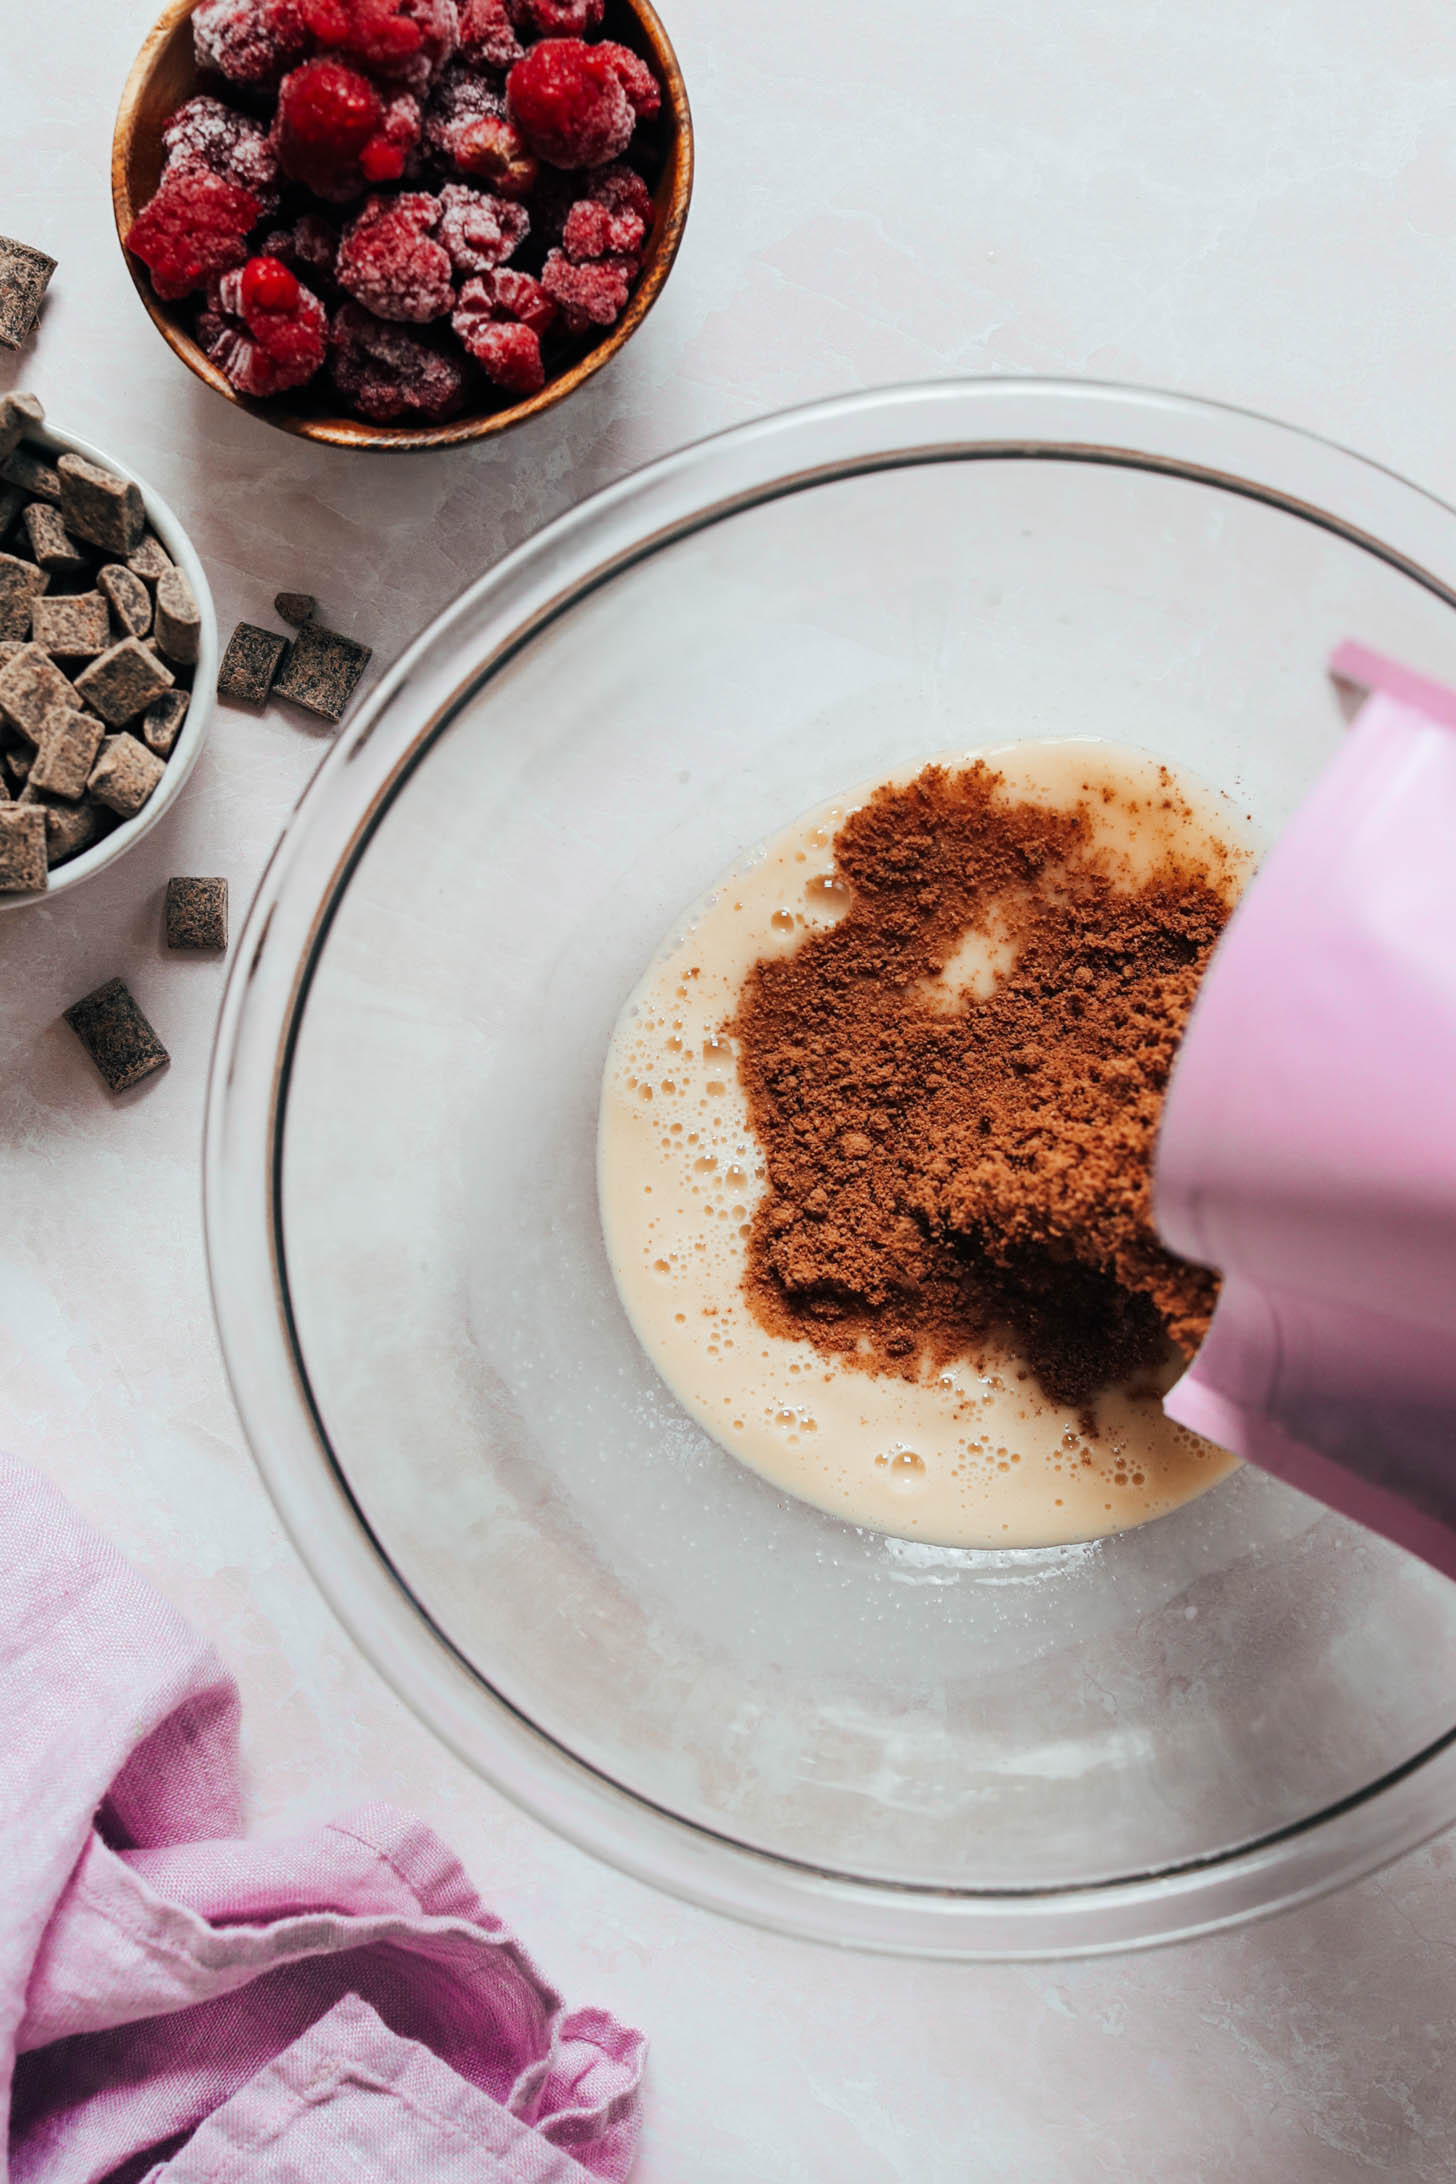 Agregar la mezcla para pastel de chocolate a los ingredientes húmedos